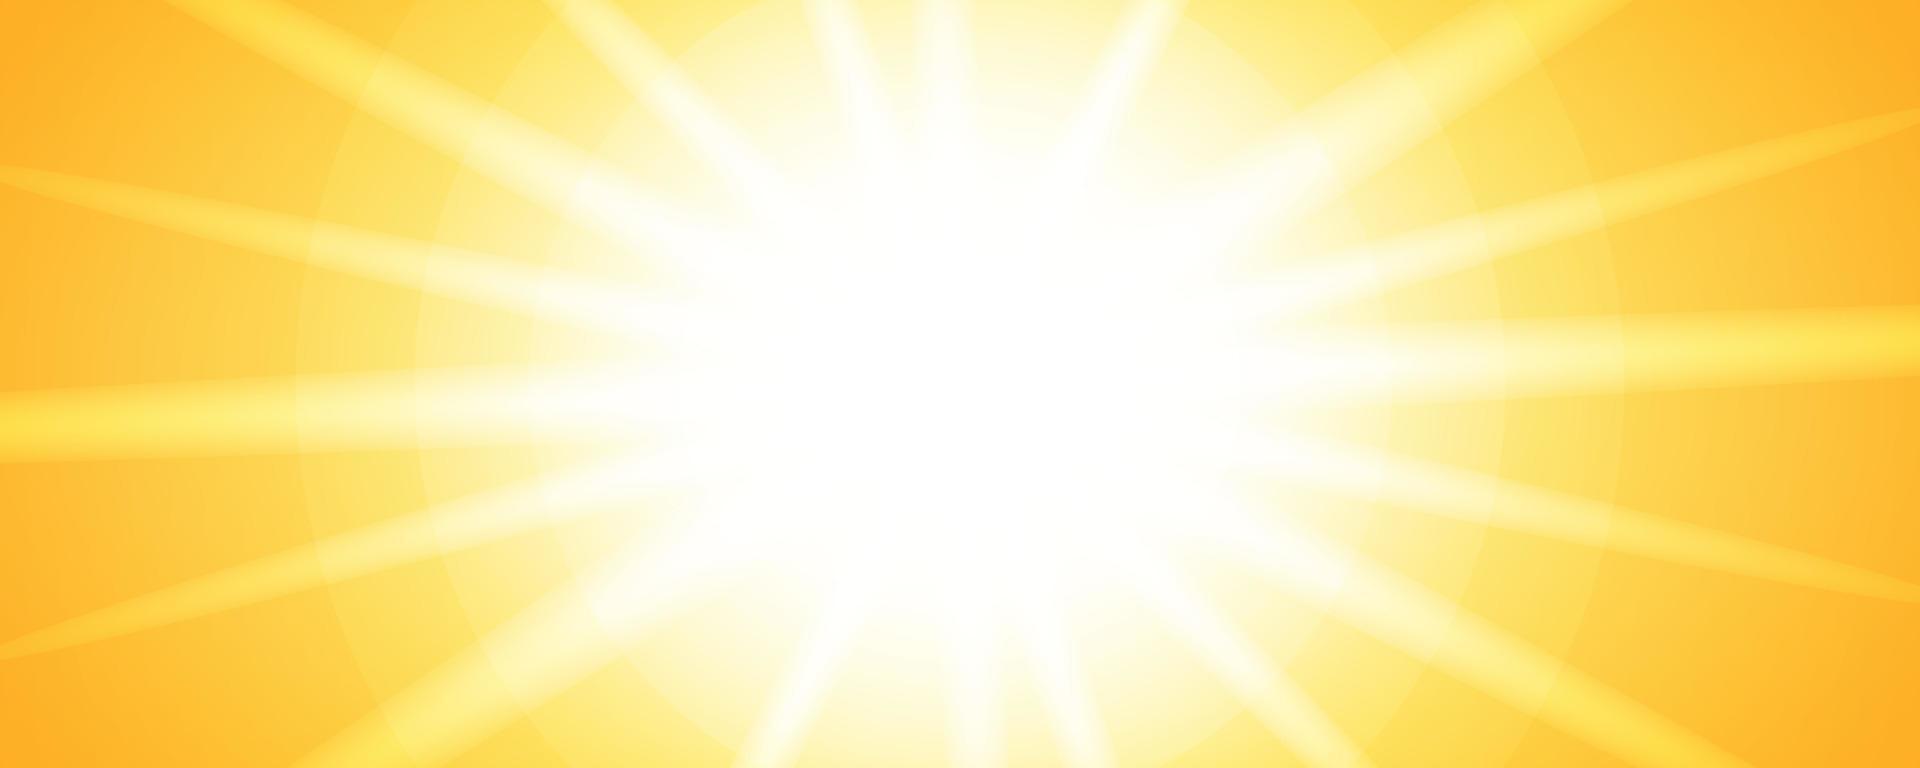 conception de bannière d'été abstraite avec des lumières du soleil brillantes vecteur